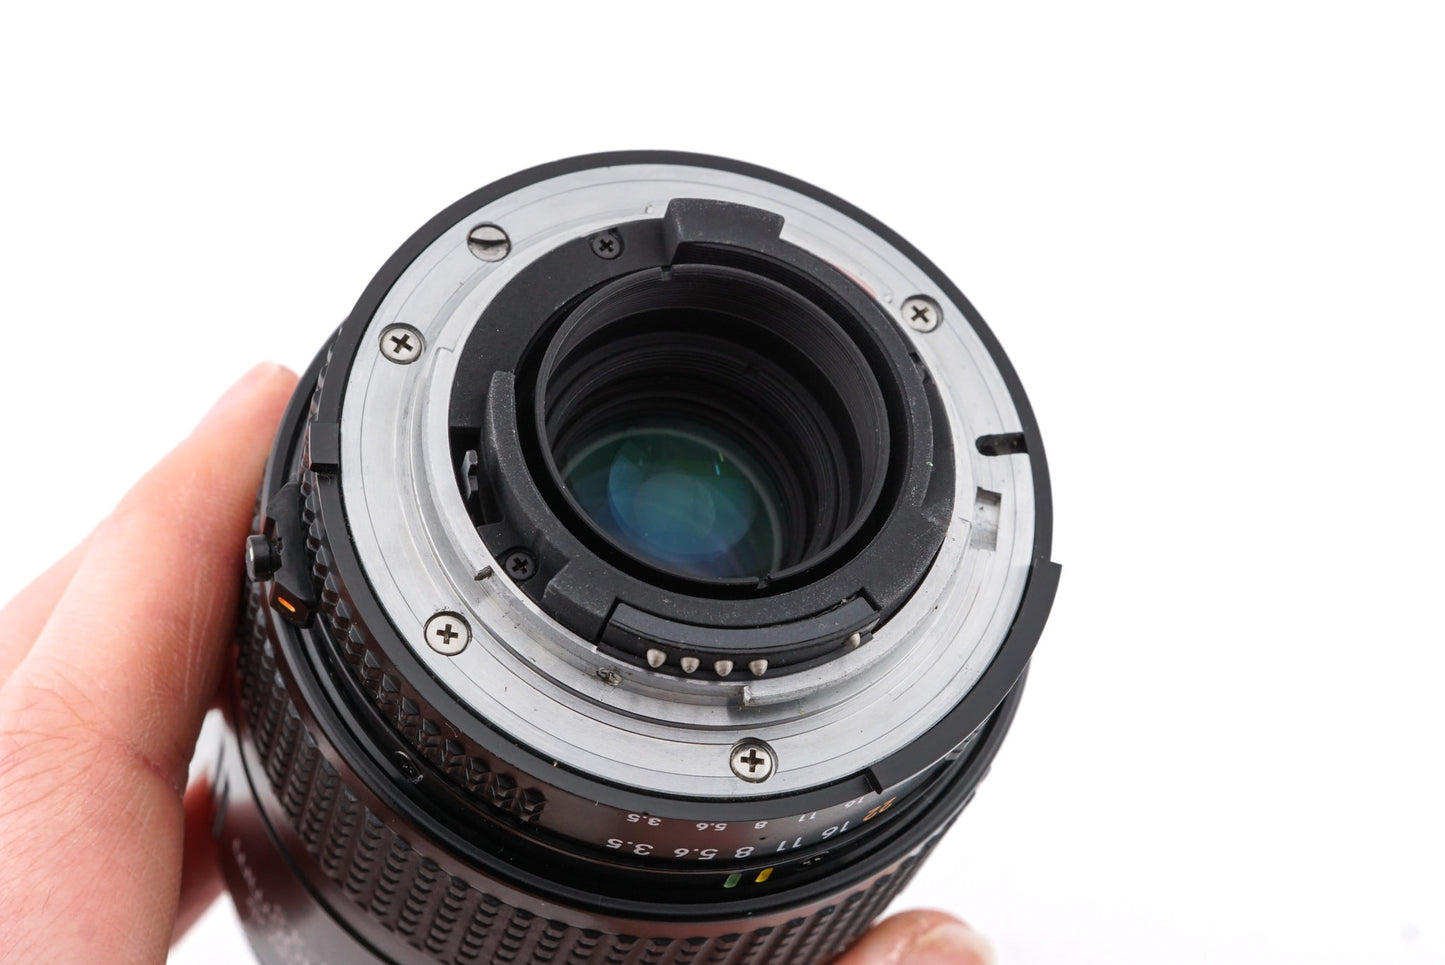 Nikon 35-105mm f3.5-4.5 AF Nikkor